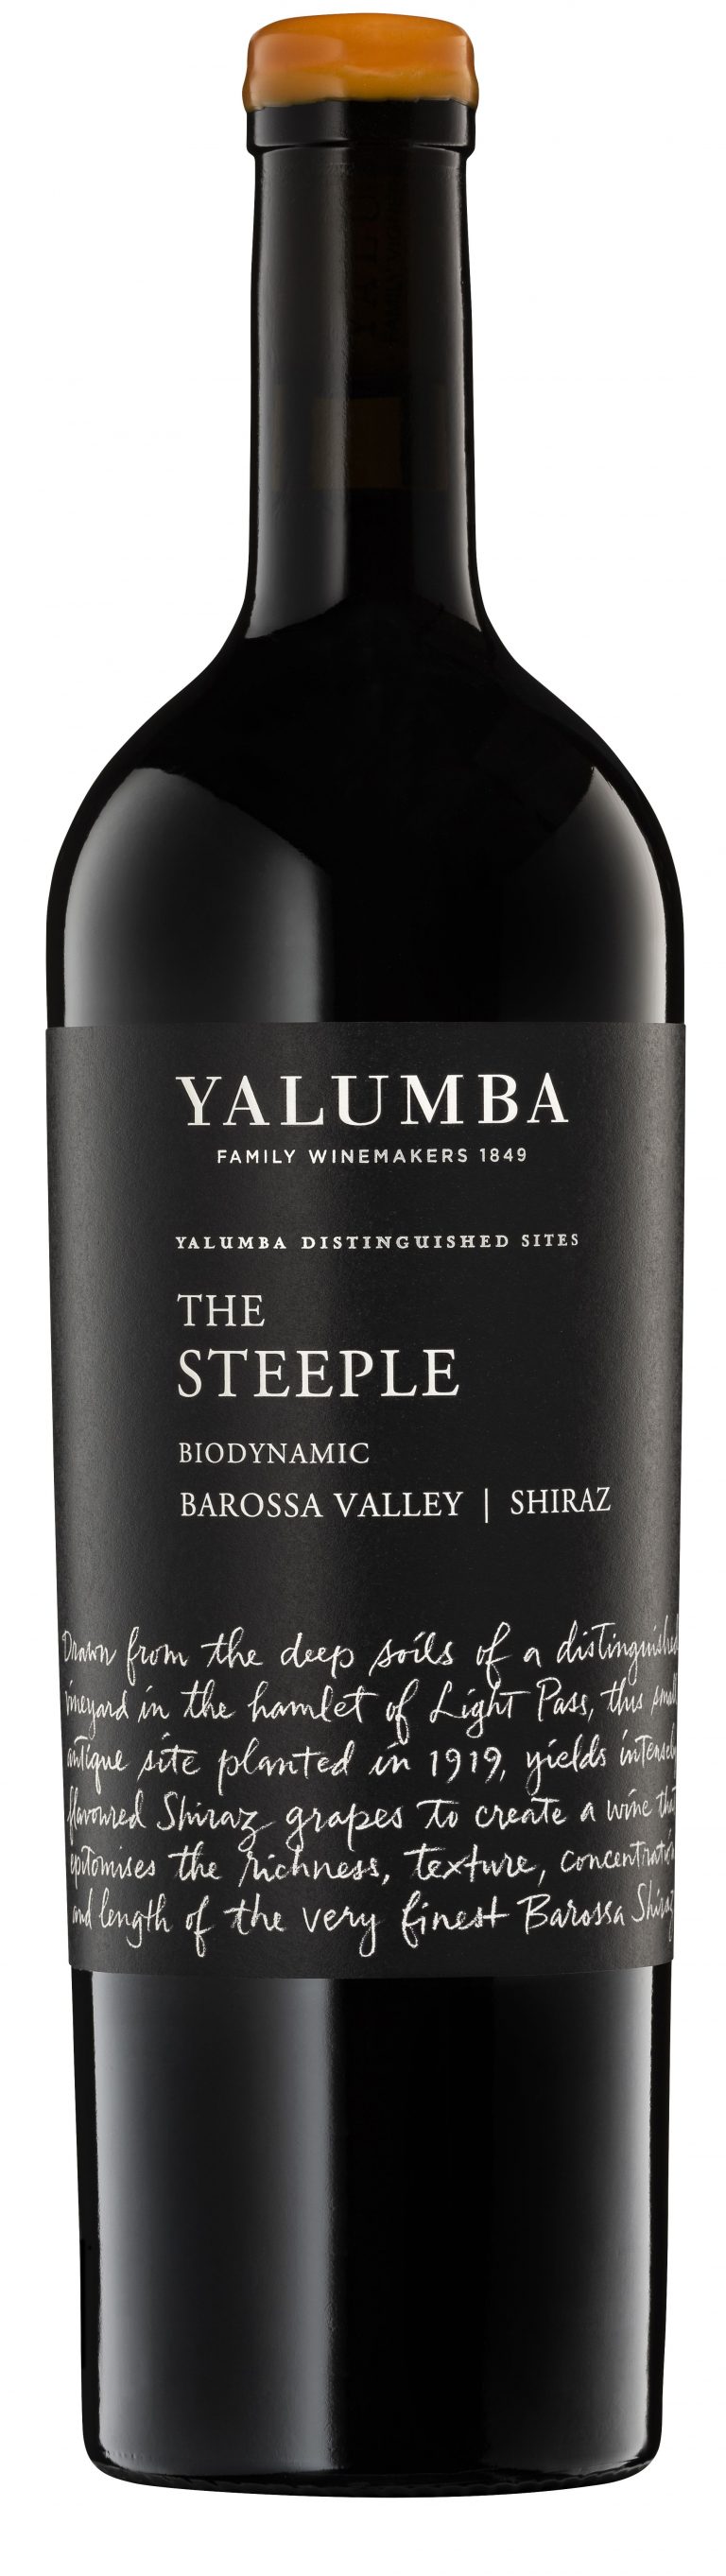 Yalumba The Steeple Shiraz 2018